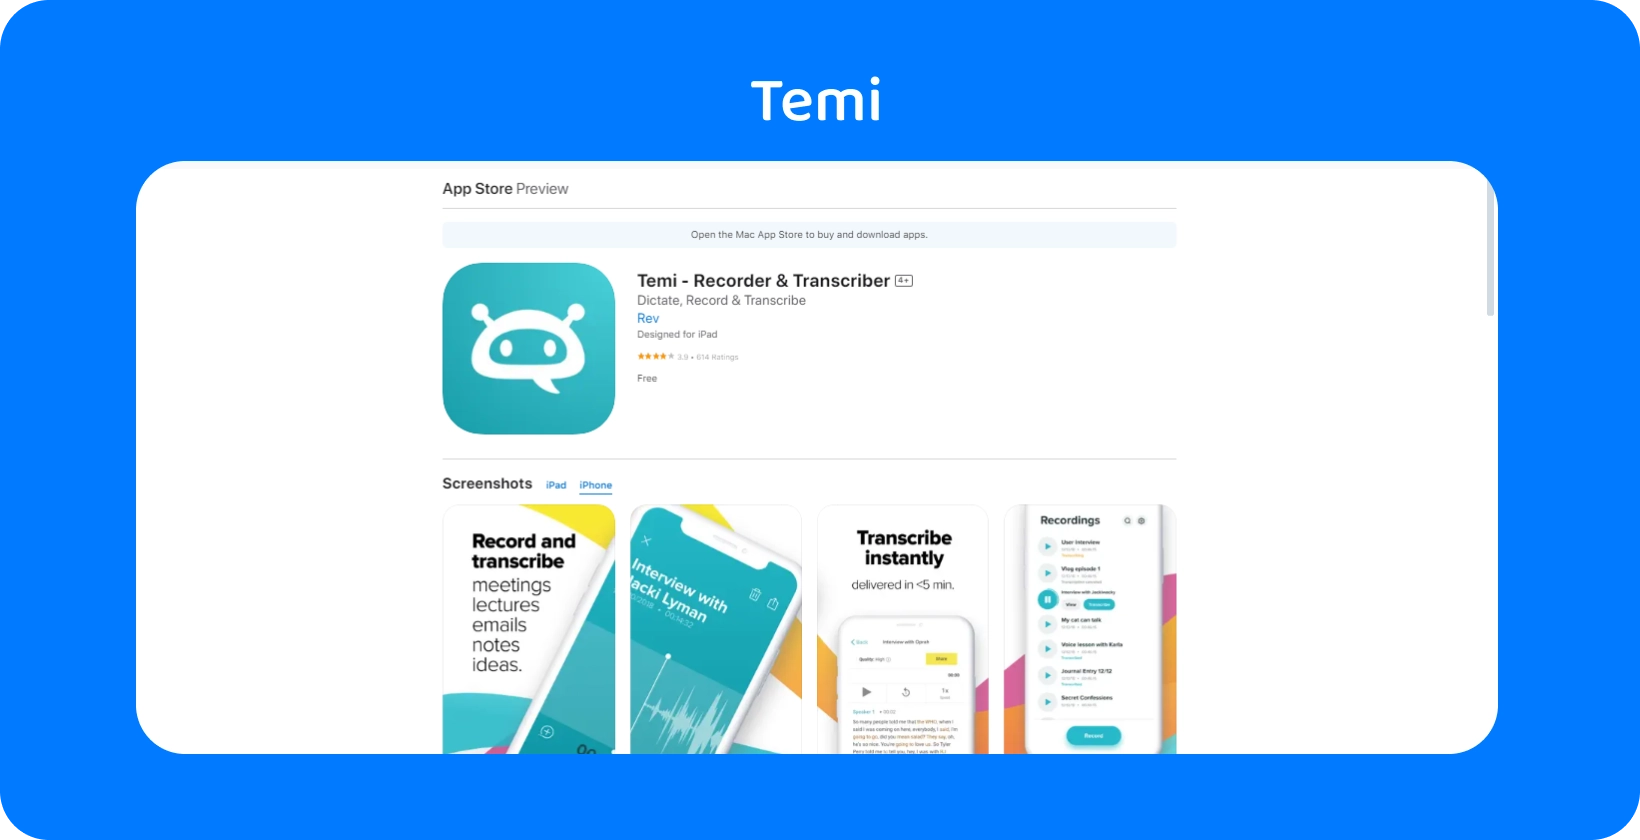 لقطة شاشة لقائمة Temi App Store ، مع التركيز على ميزات التسجيل السريع والنسخ الفوري.